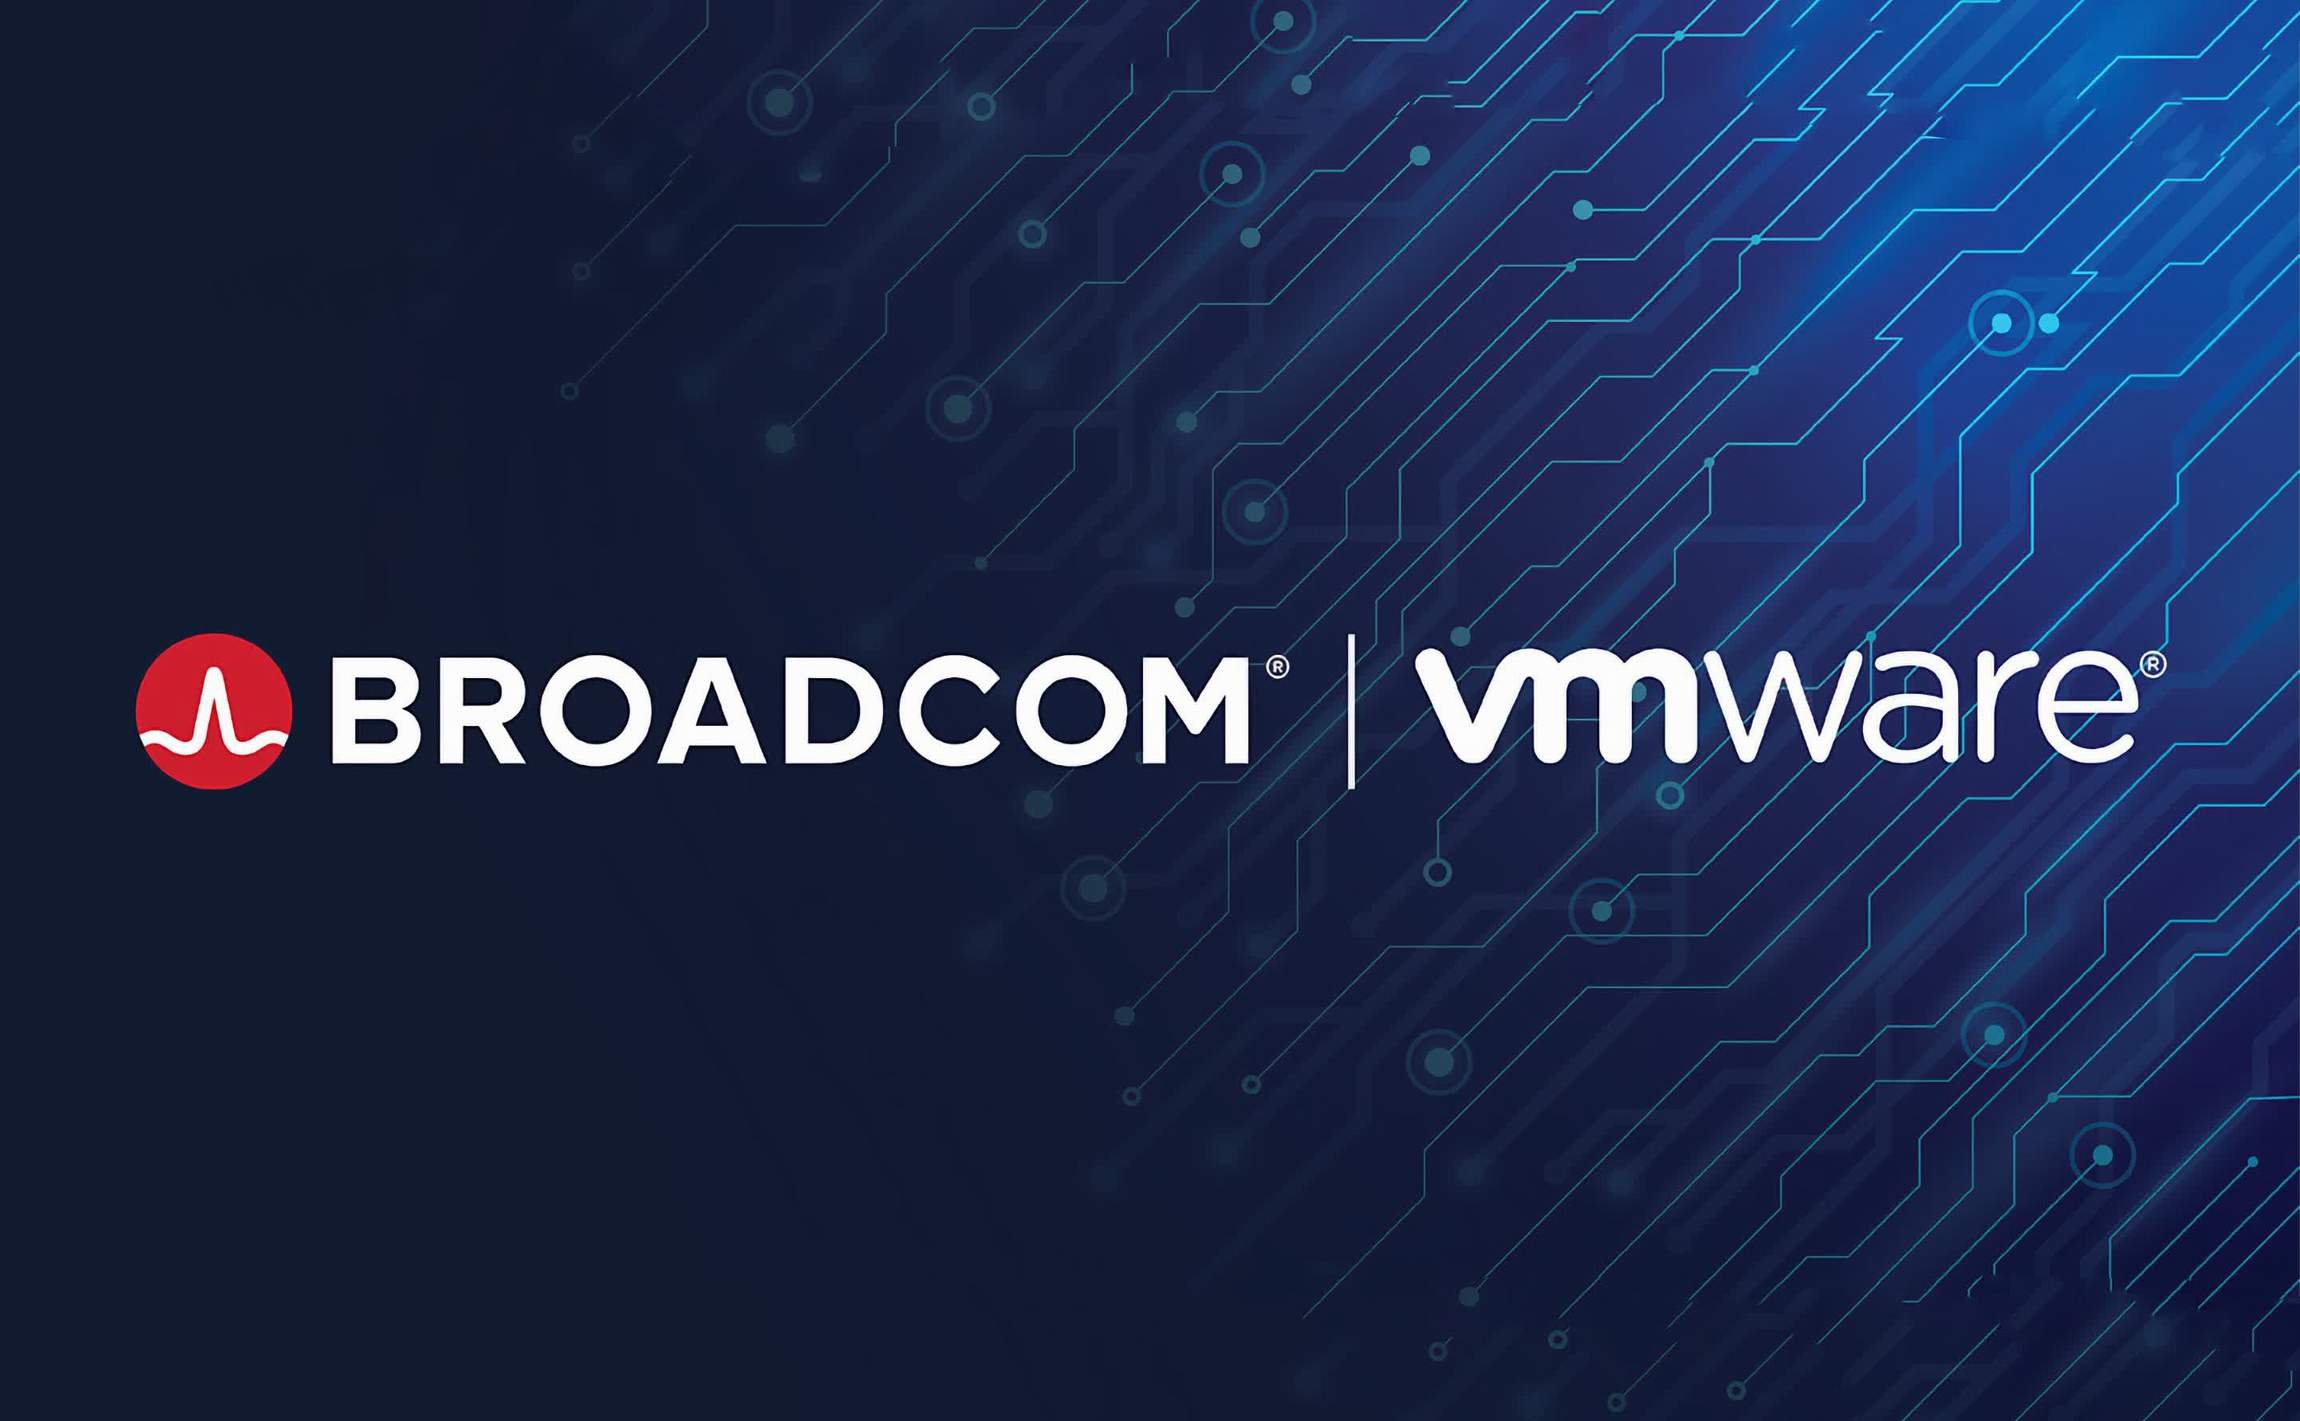  Broadcom dă 61 de miliarde de dolari pe Vmware. Una dintre cele mai mari din sectorul tehnologiei